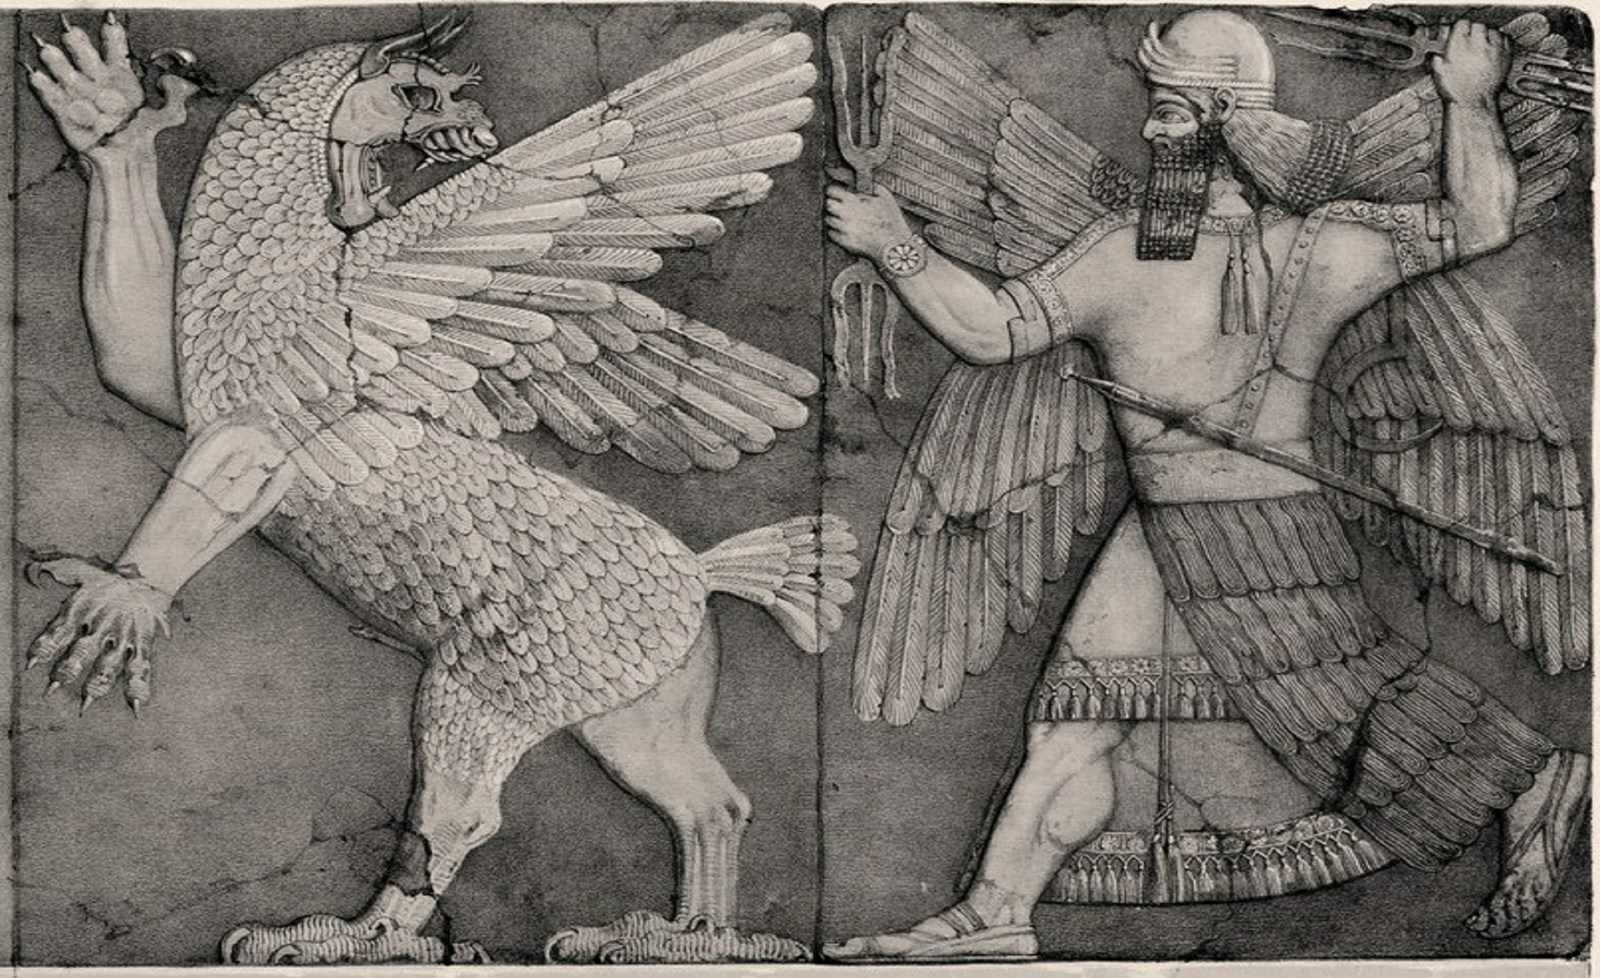 Marduk - bůh patrona Babylónu